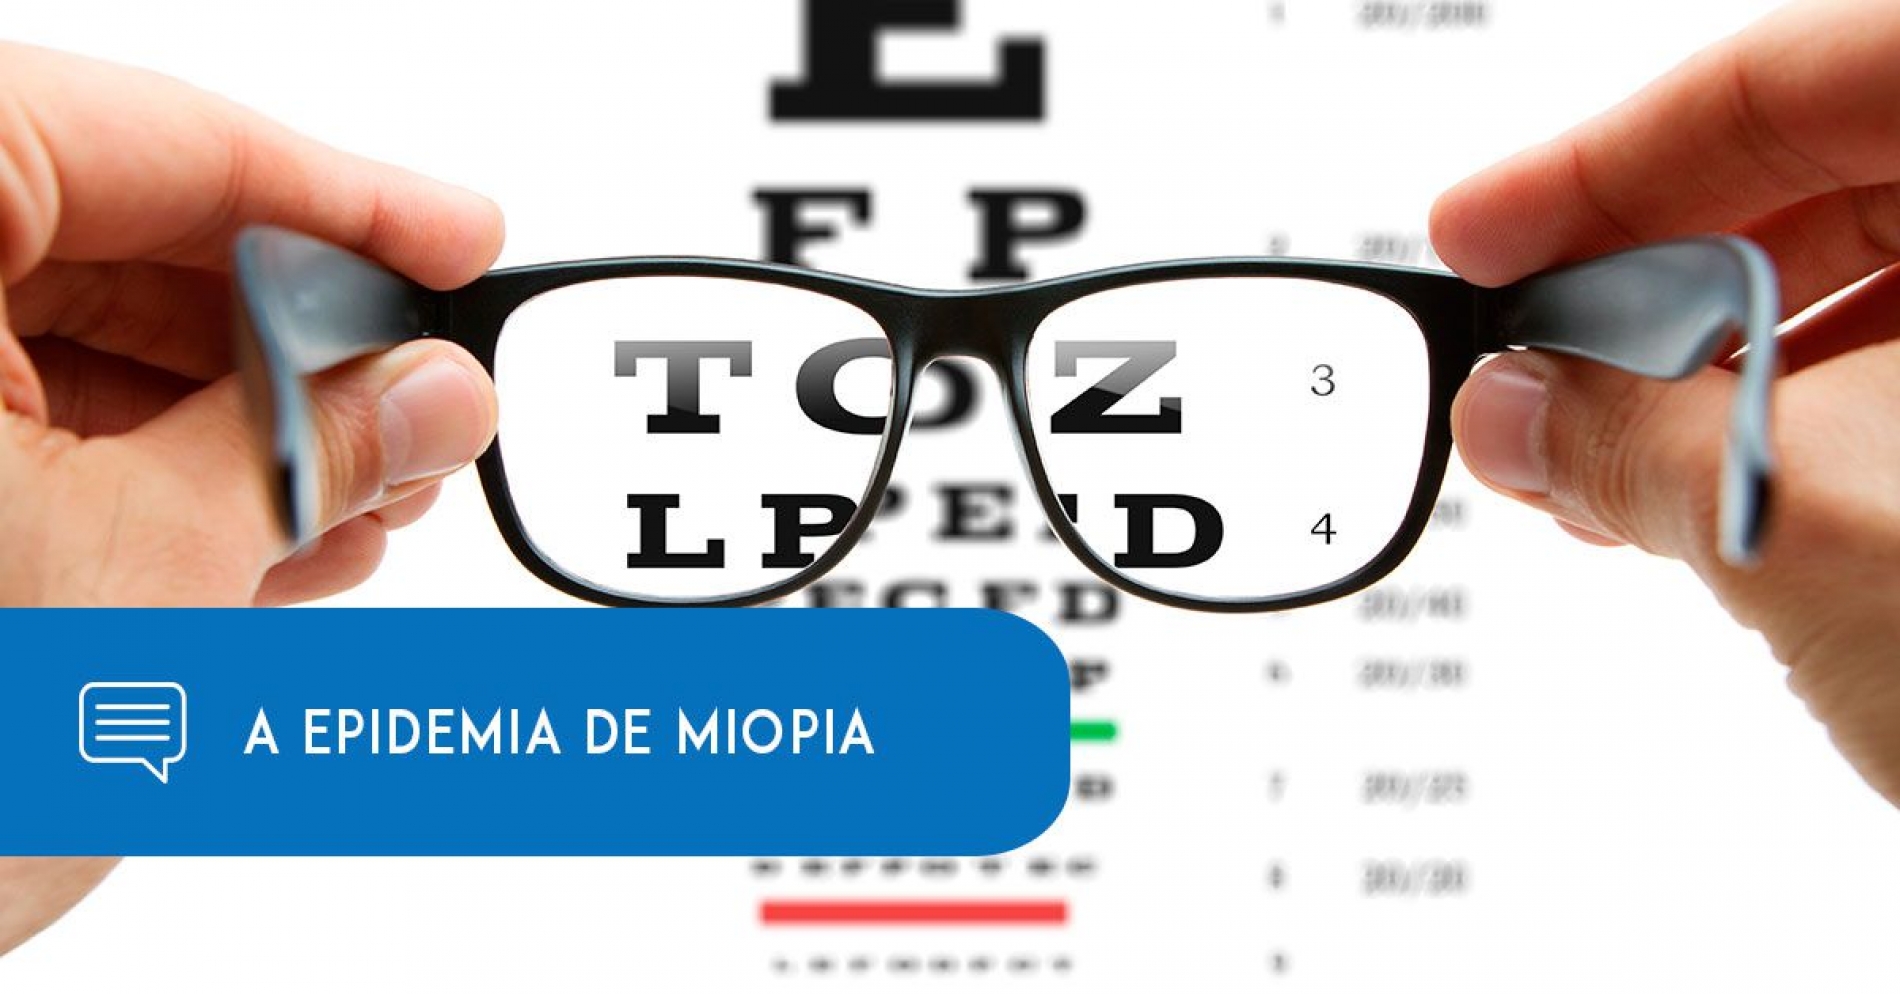 A epidemia de miopia – podemos parar? - Eduardo Paulino